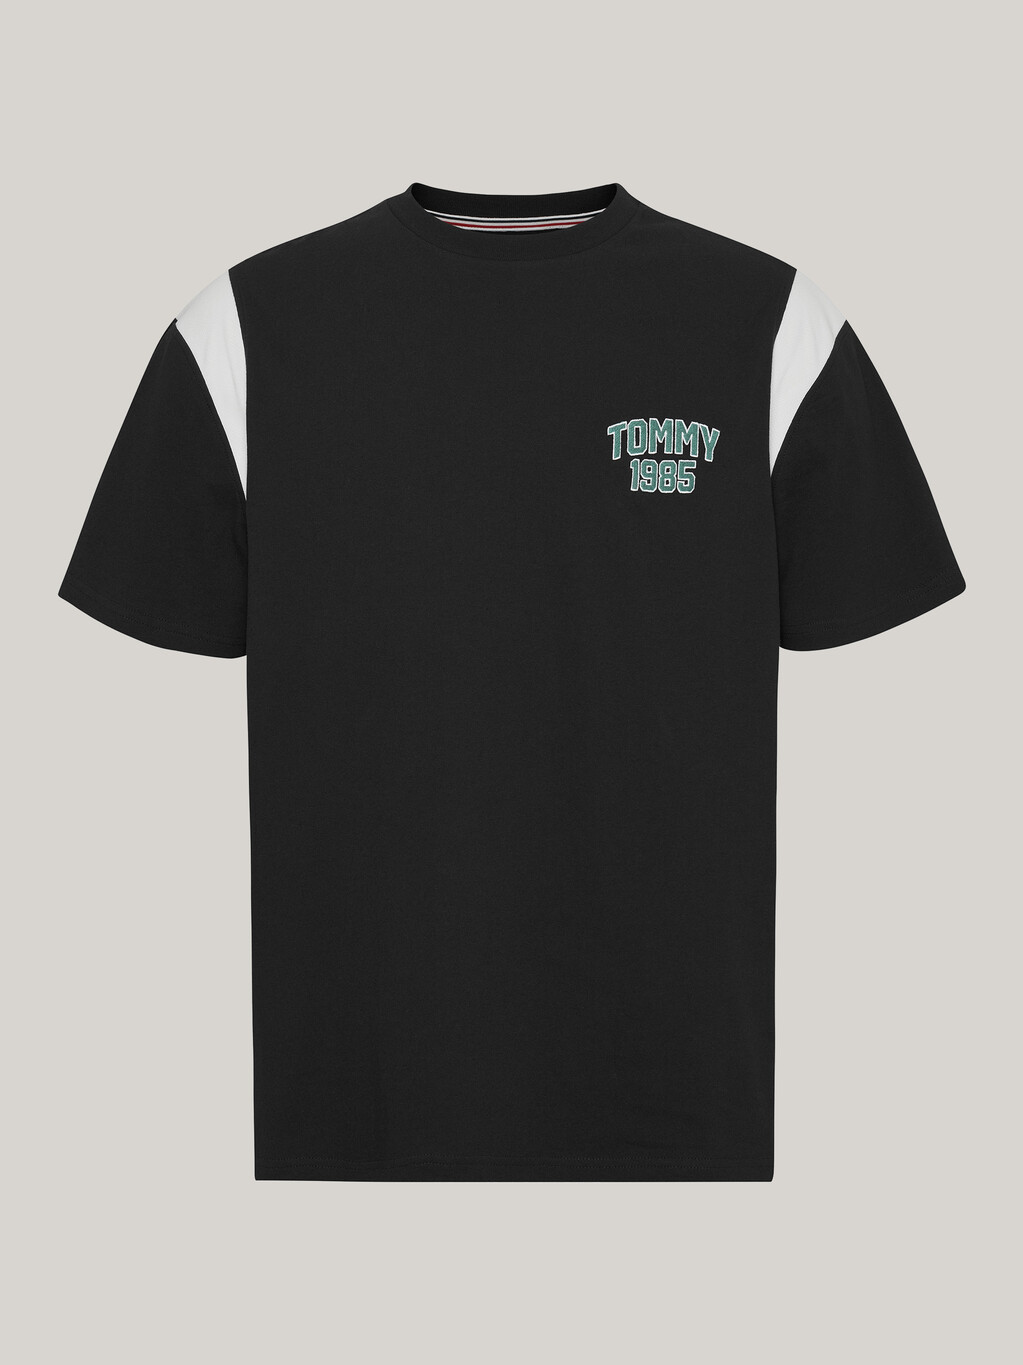 Tommy 1985 學院風 T 恤, Black, hi-res